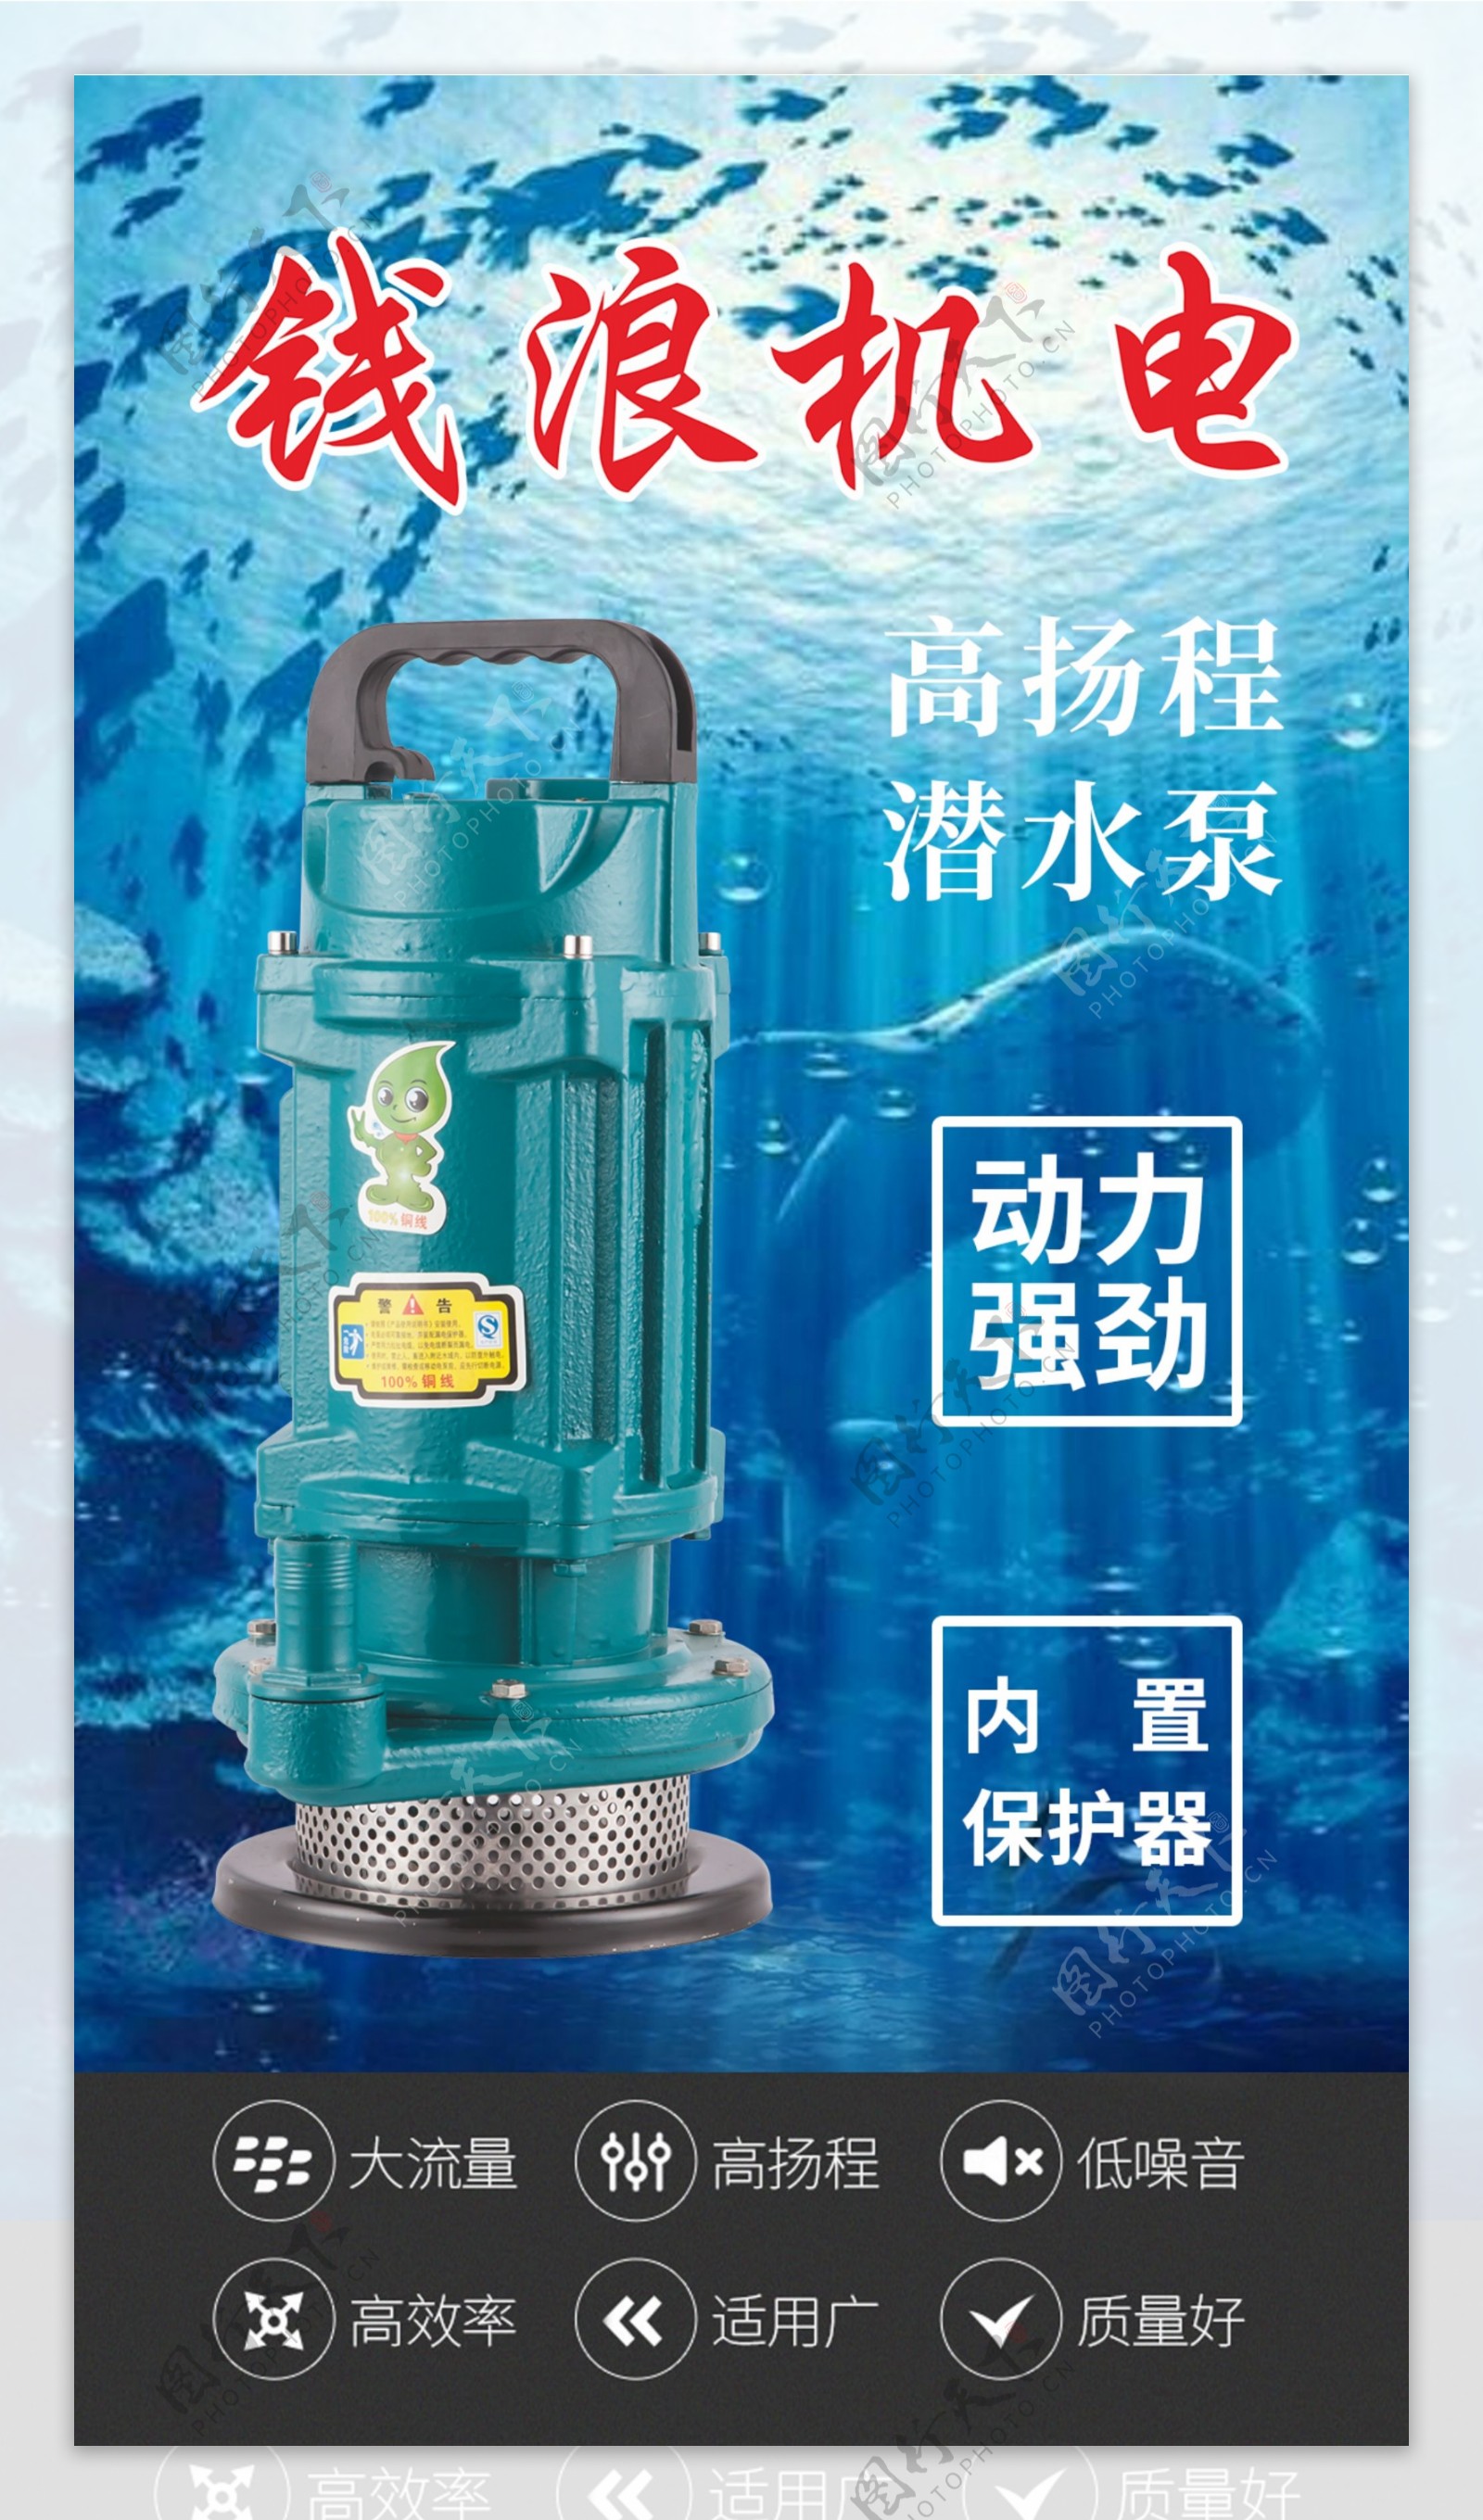 水泵机电海报